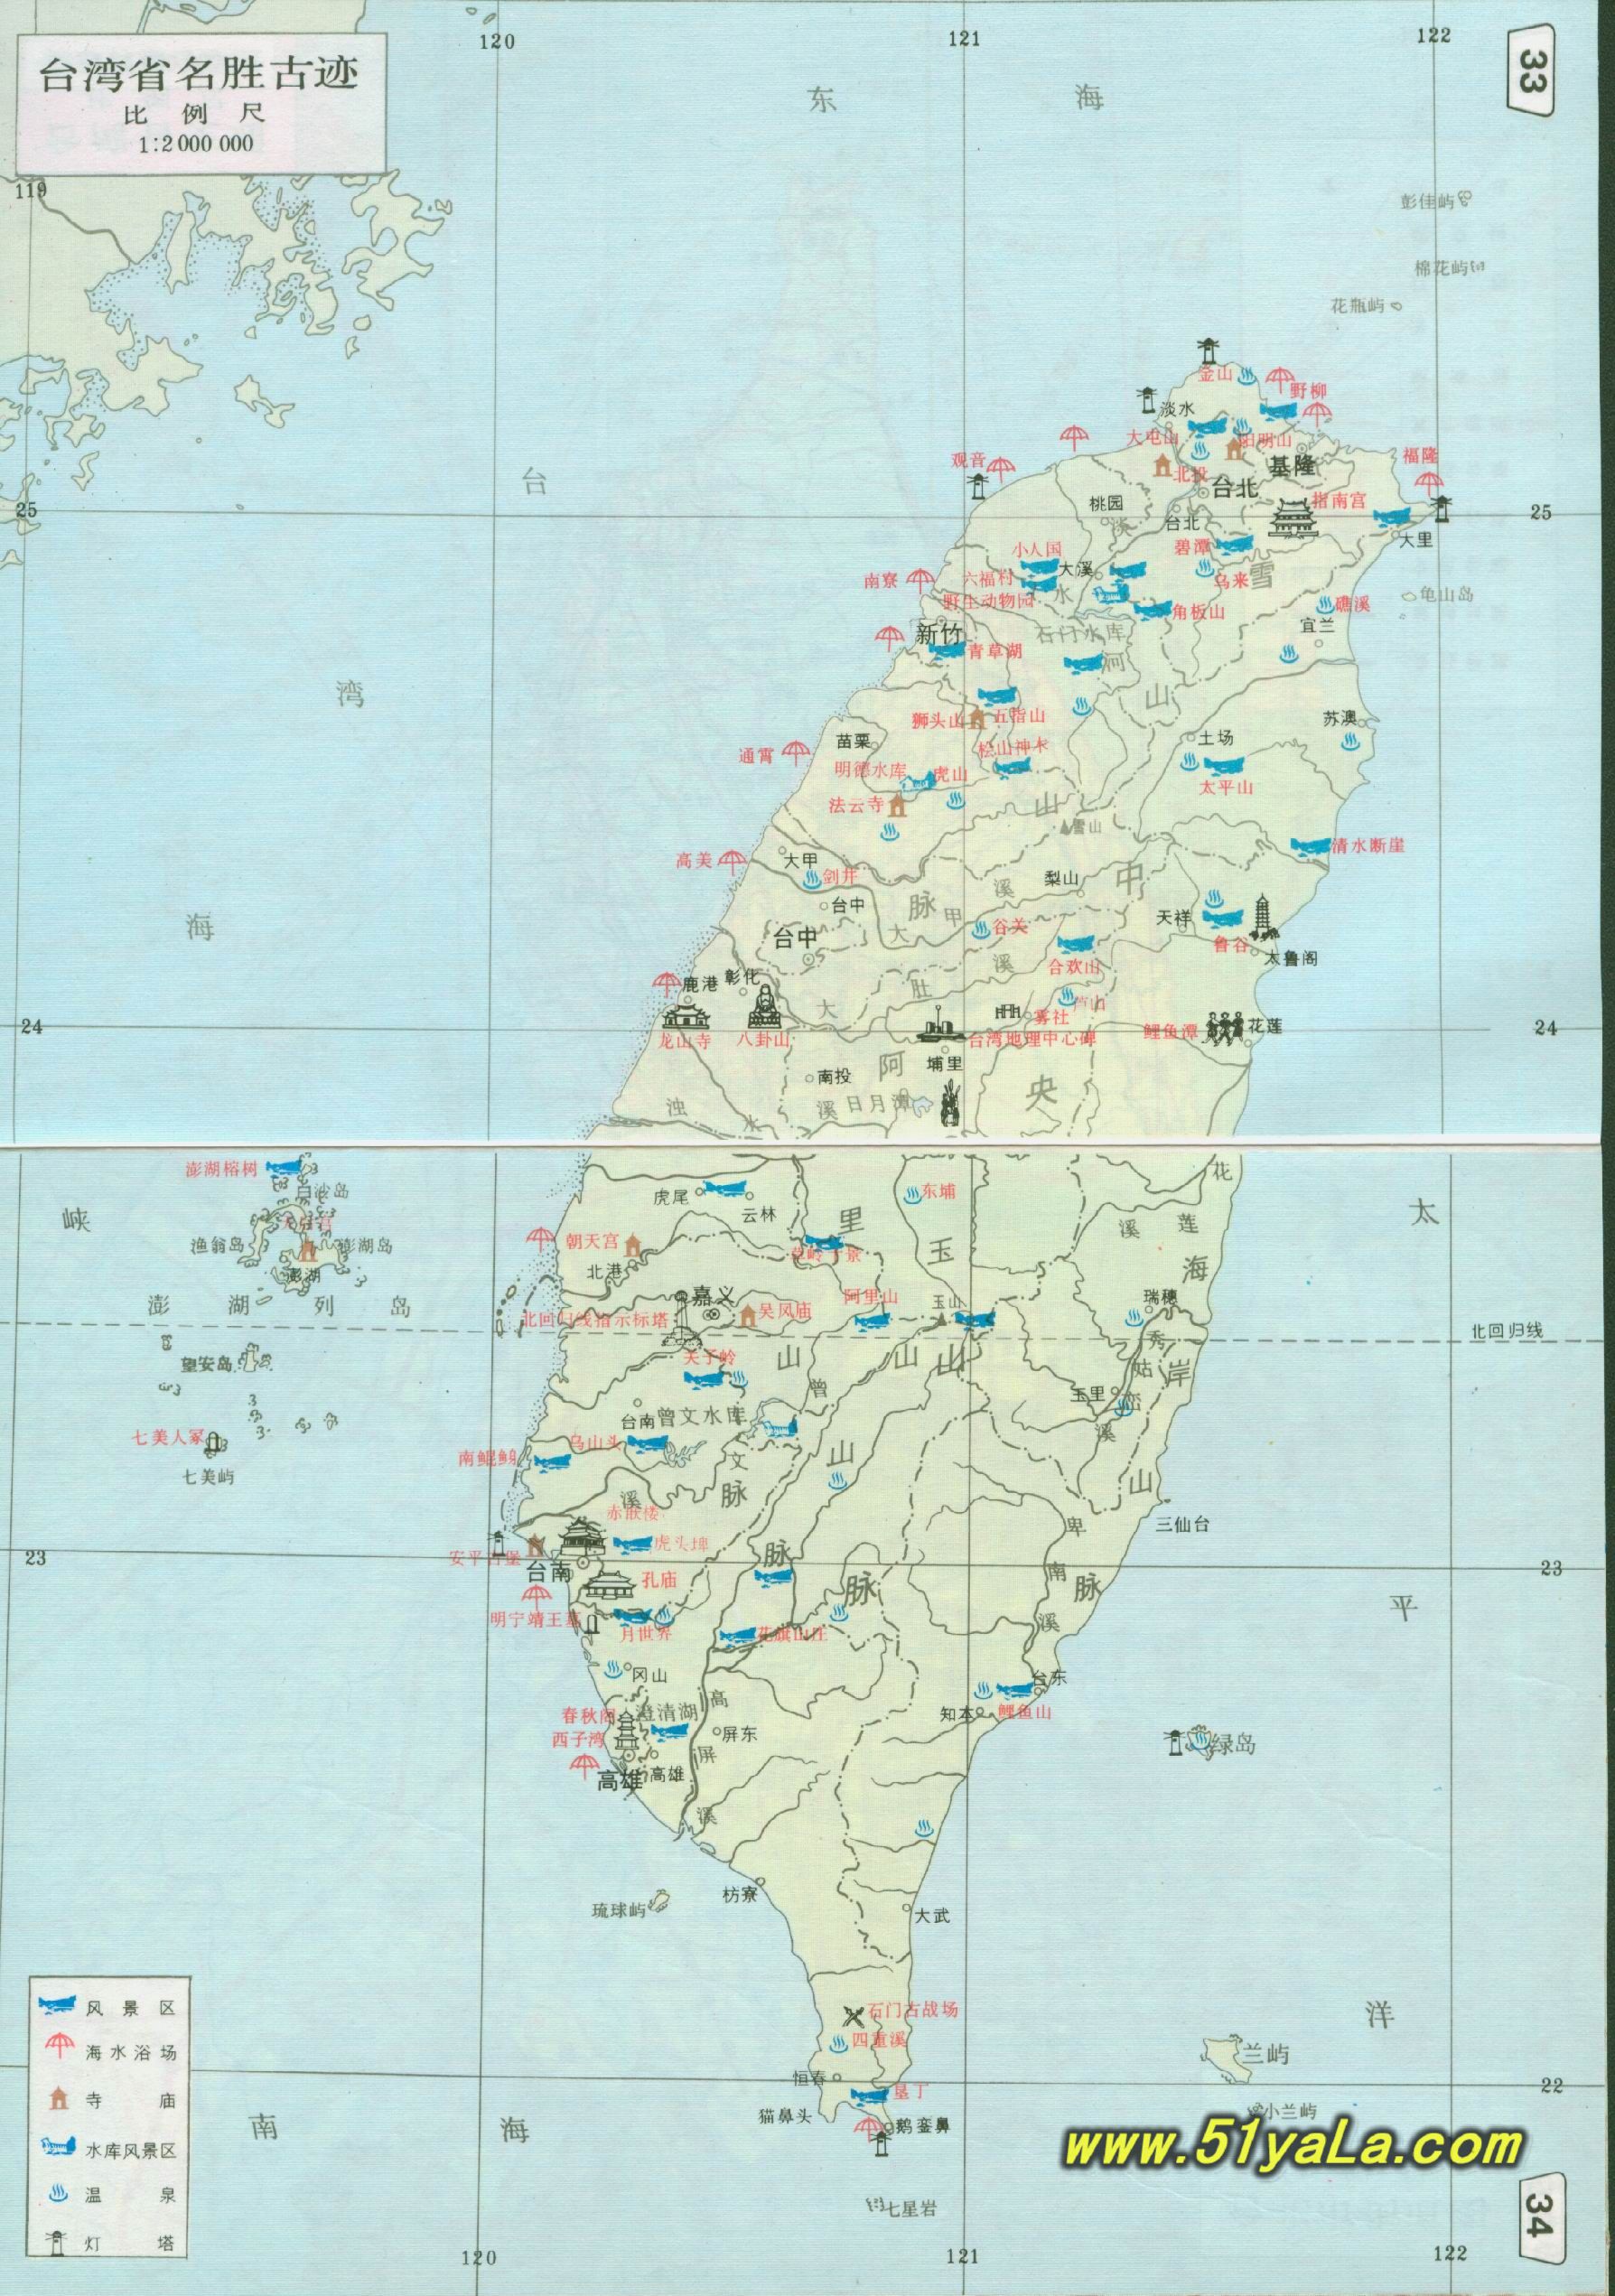 台湾旅游景点分布图_景点分布图地图库_地图窝